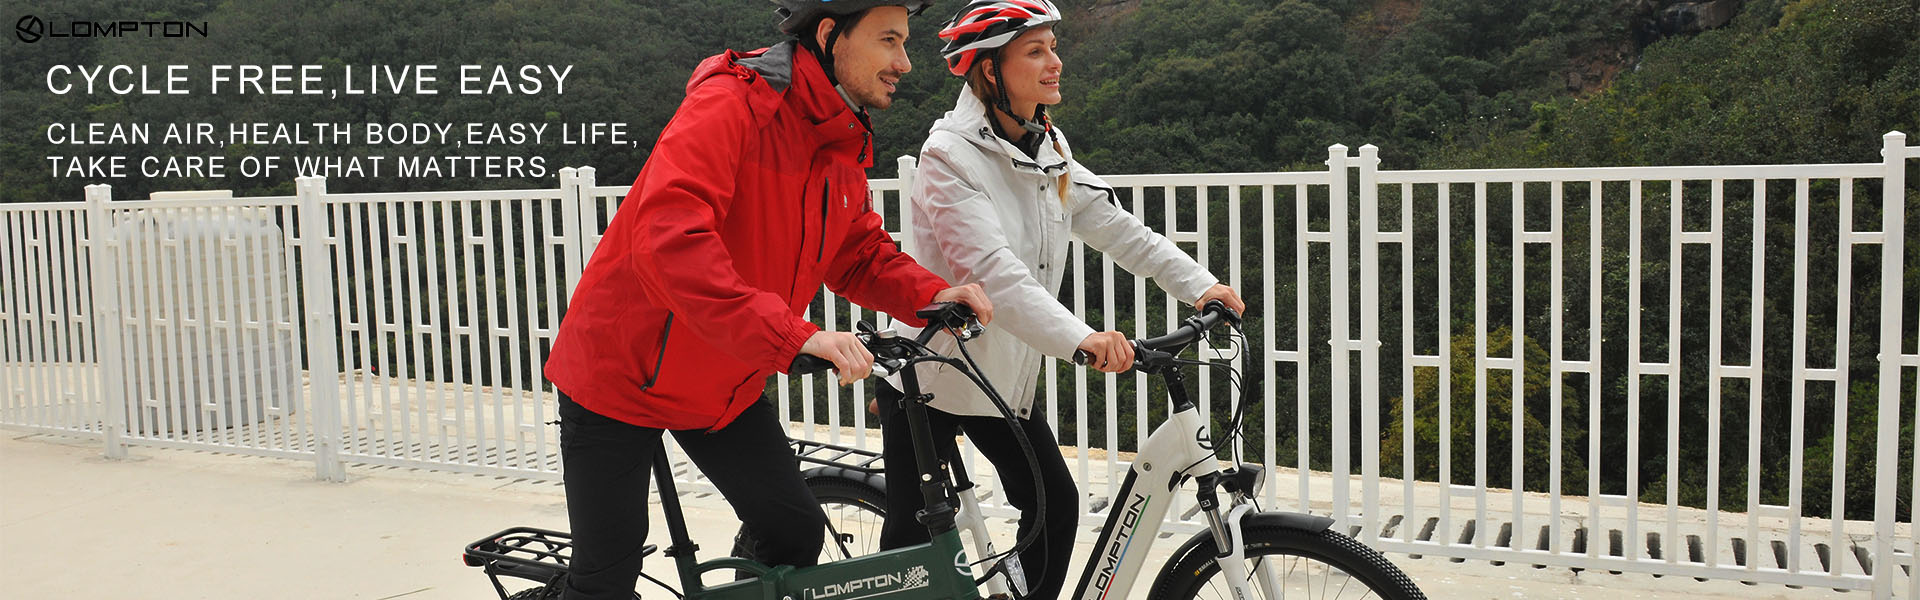 E-kerékpárok, elektromos kerékpárok, moped,Shenzhen Ludon Technologies CO.,LTD